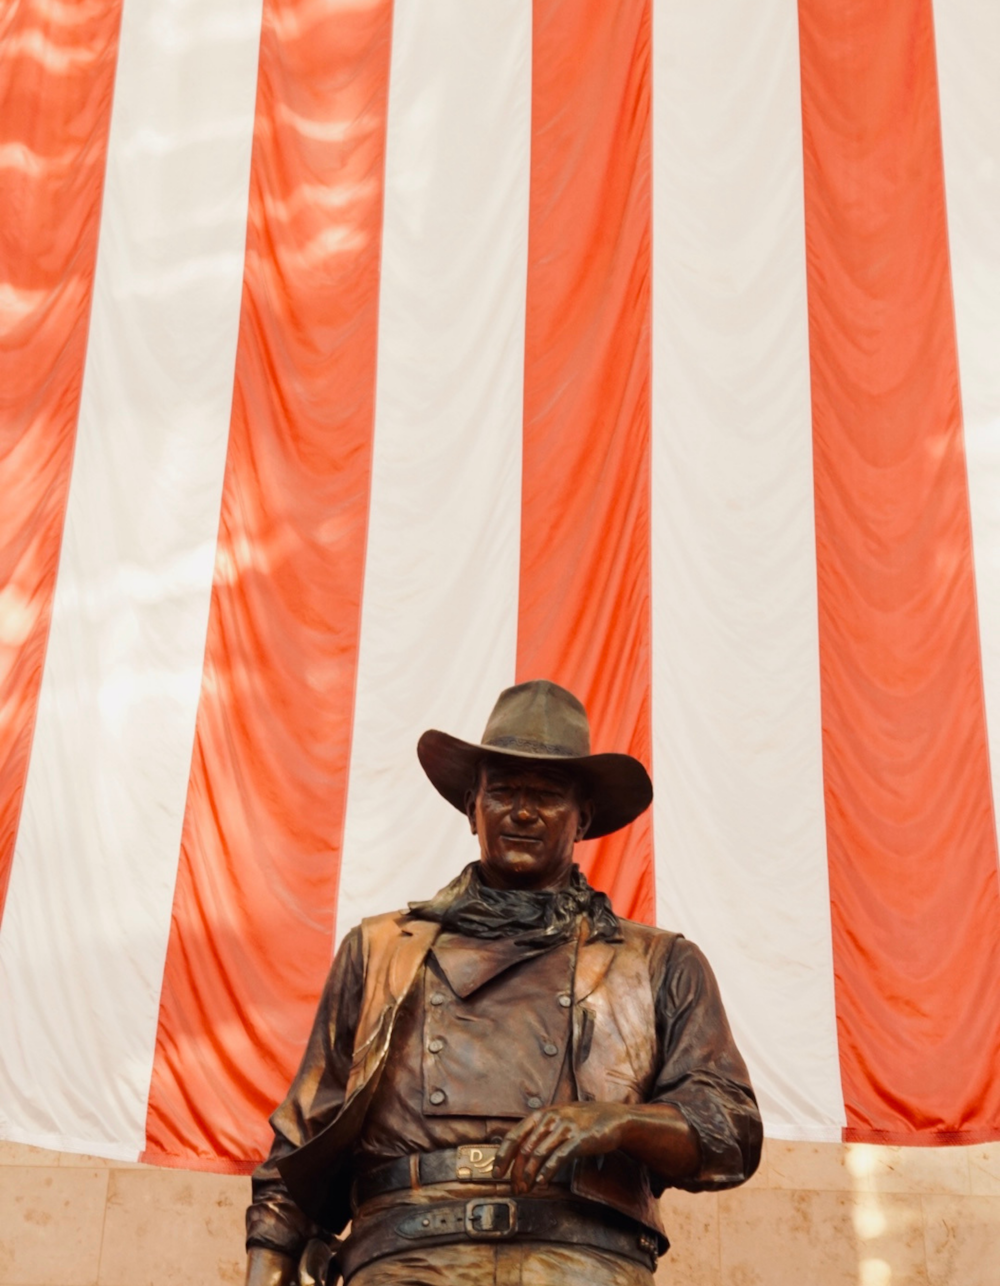 Eine Statue eines Mannes mit Cowboyhut